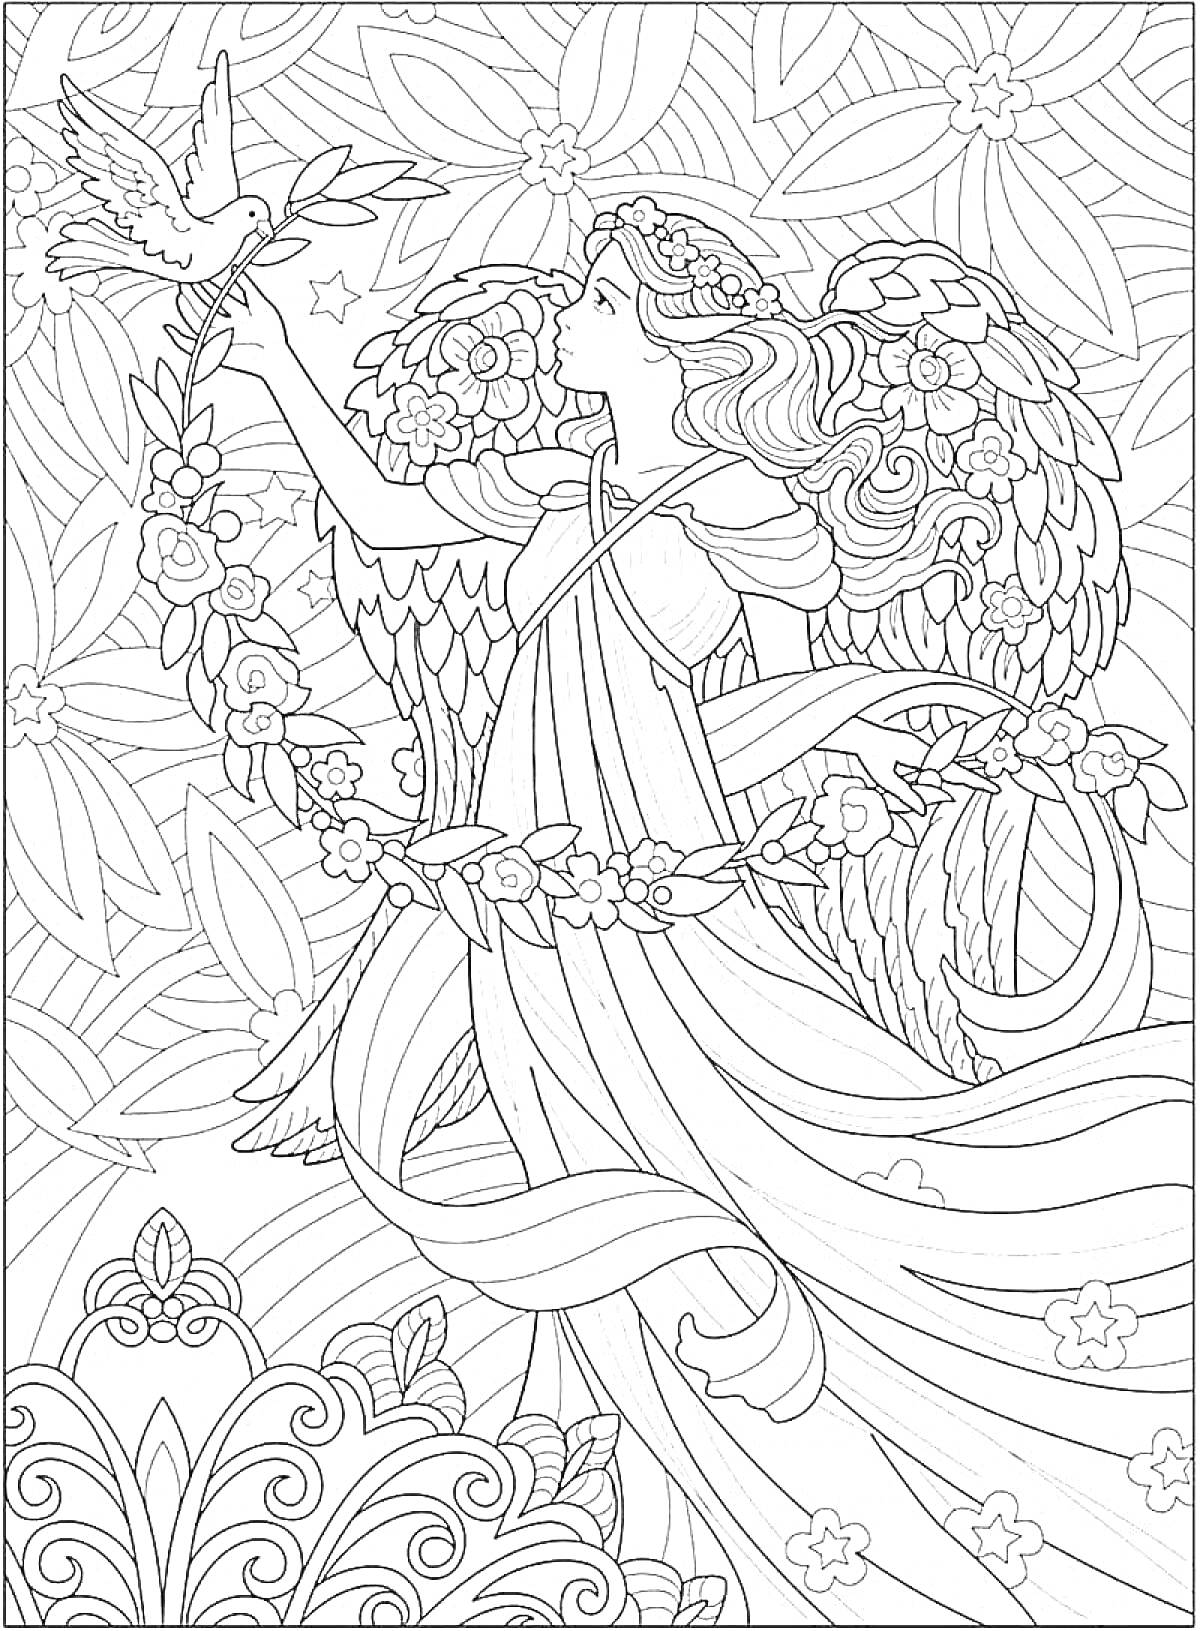 Раскраска Ангел с цветочным венком, птицей и узорчатым фоном